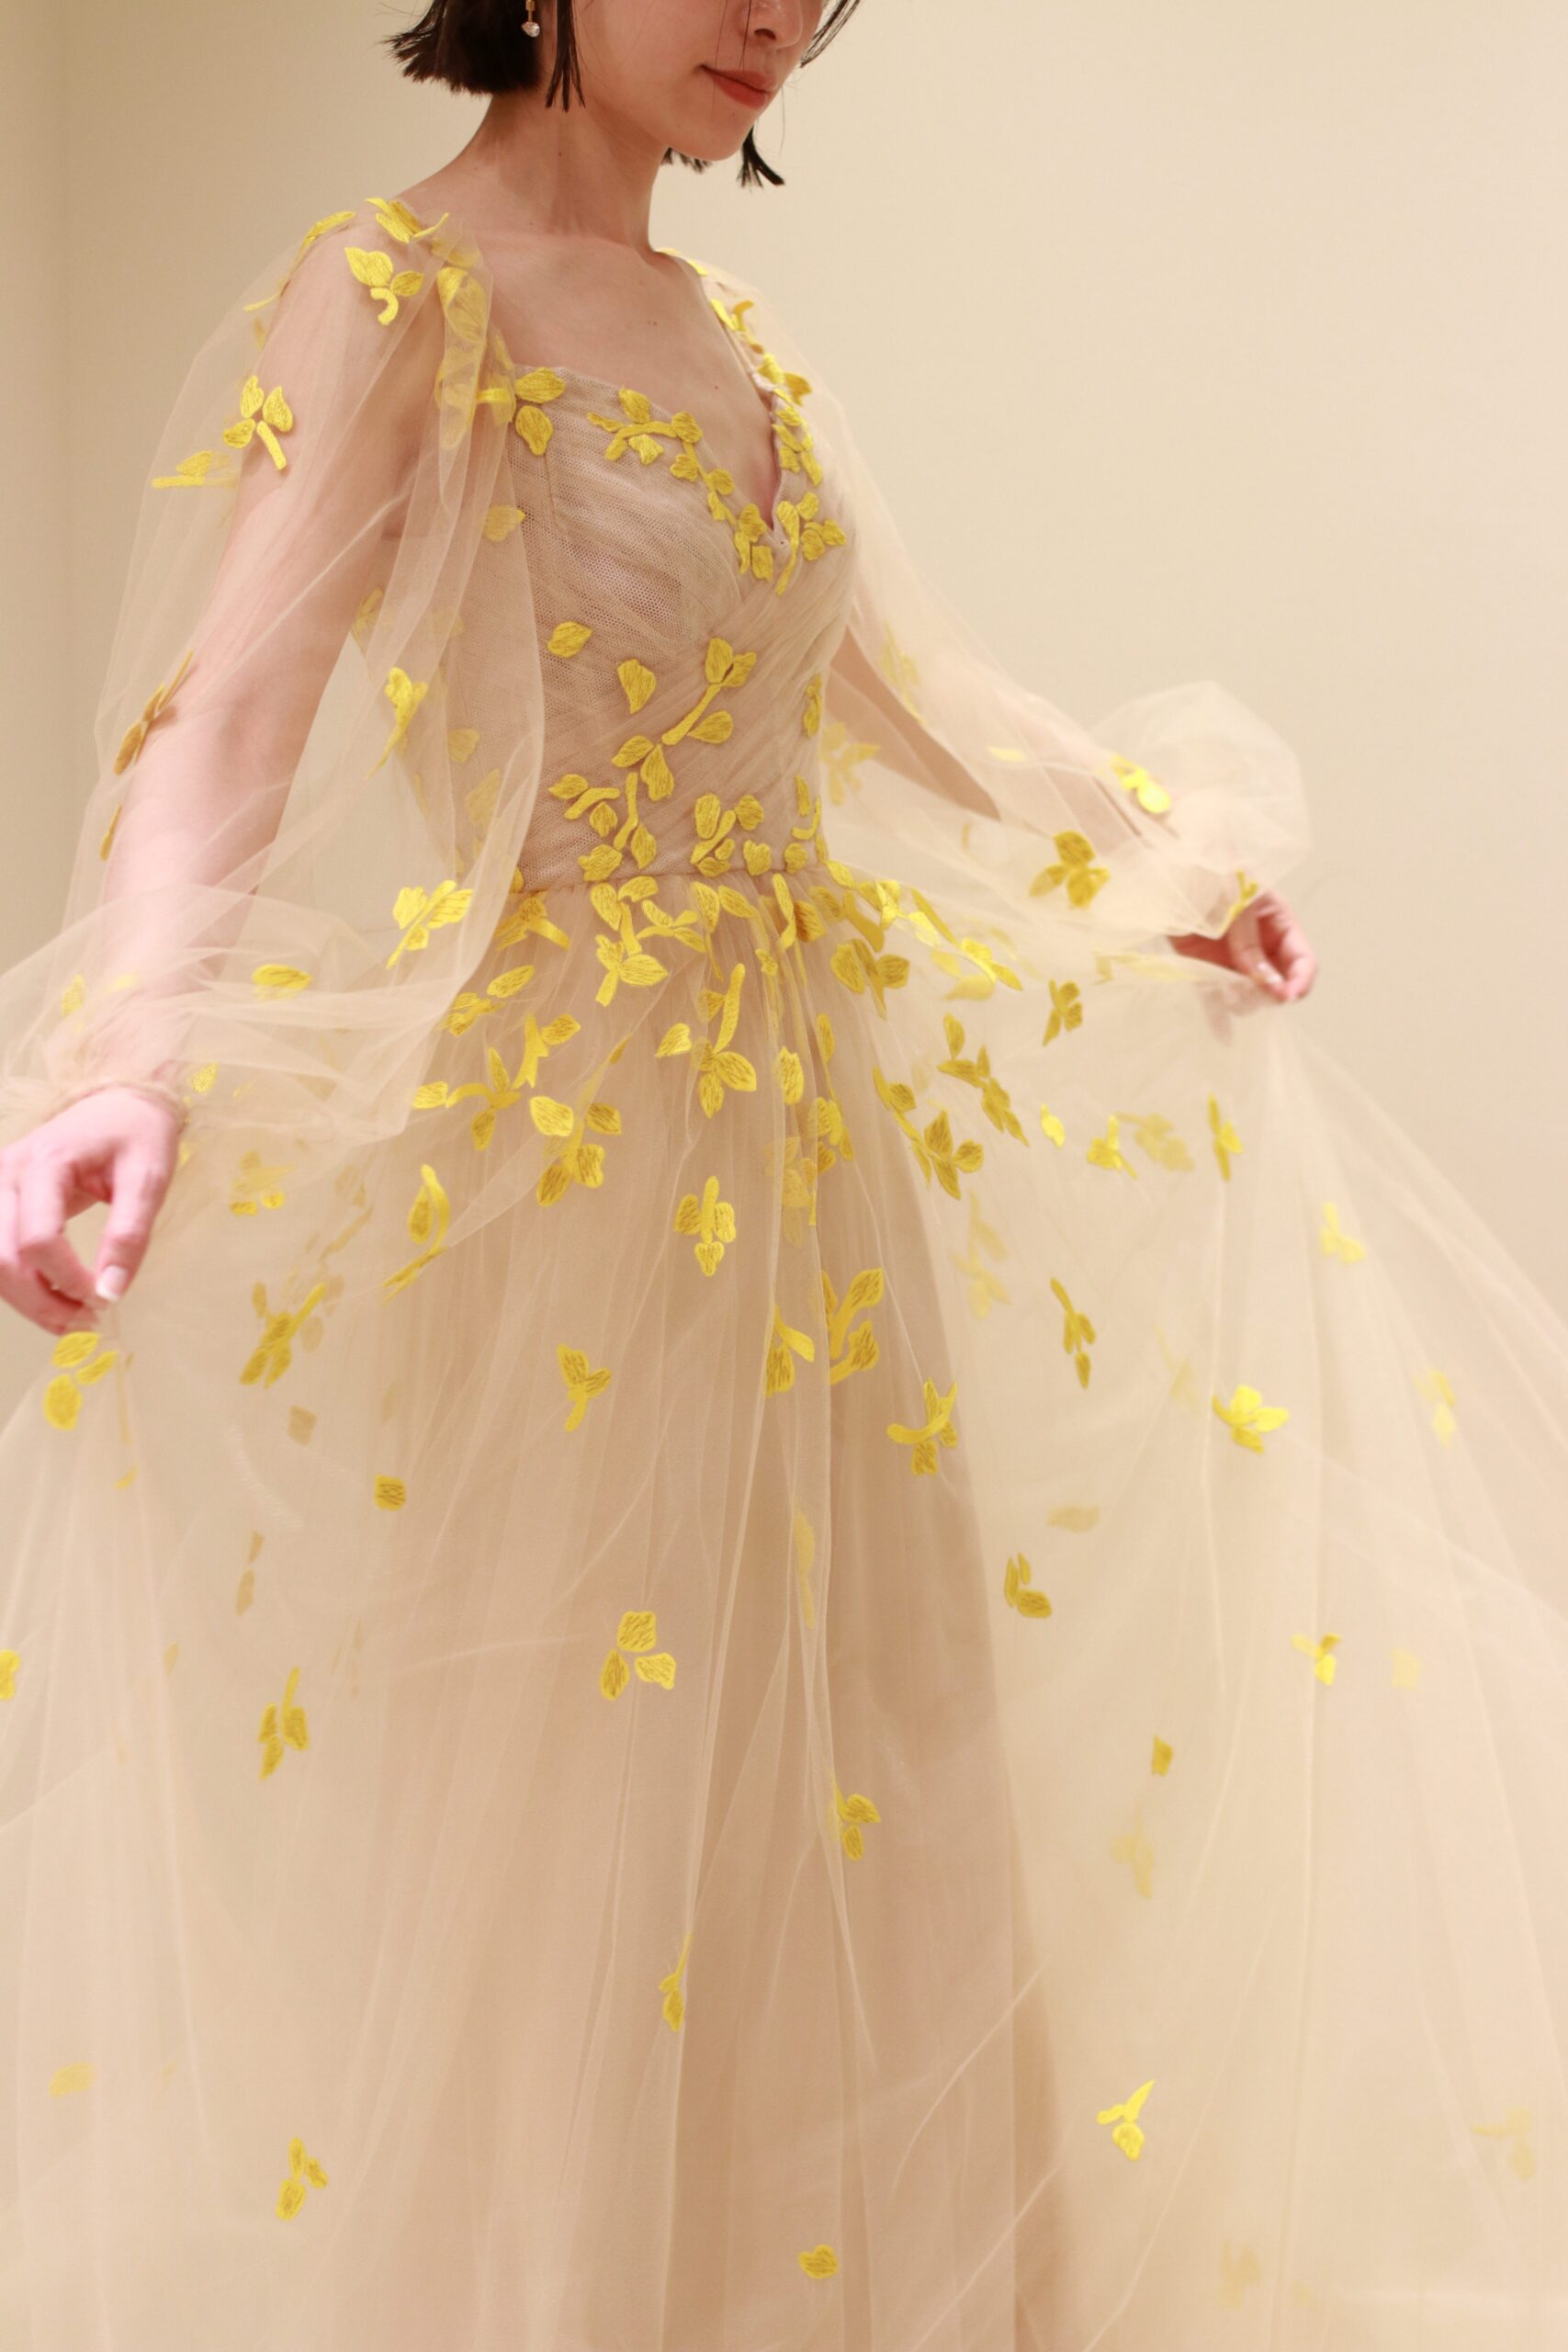 ザトリートドレッシングに入荷したモニークルイリエの新作カラードレスはベージュの柔らかなチュールの上に、イエローの刺繍で花びらの施されたデザインで花嫁の動きに合わせて可憐な印象を演出します。